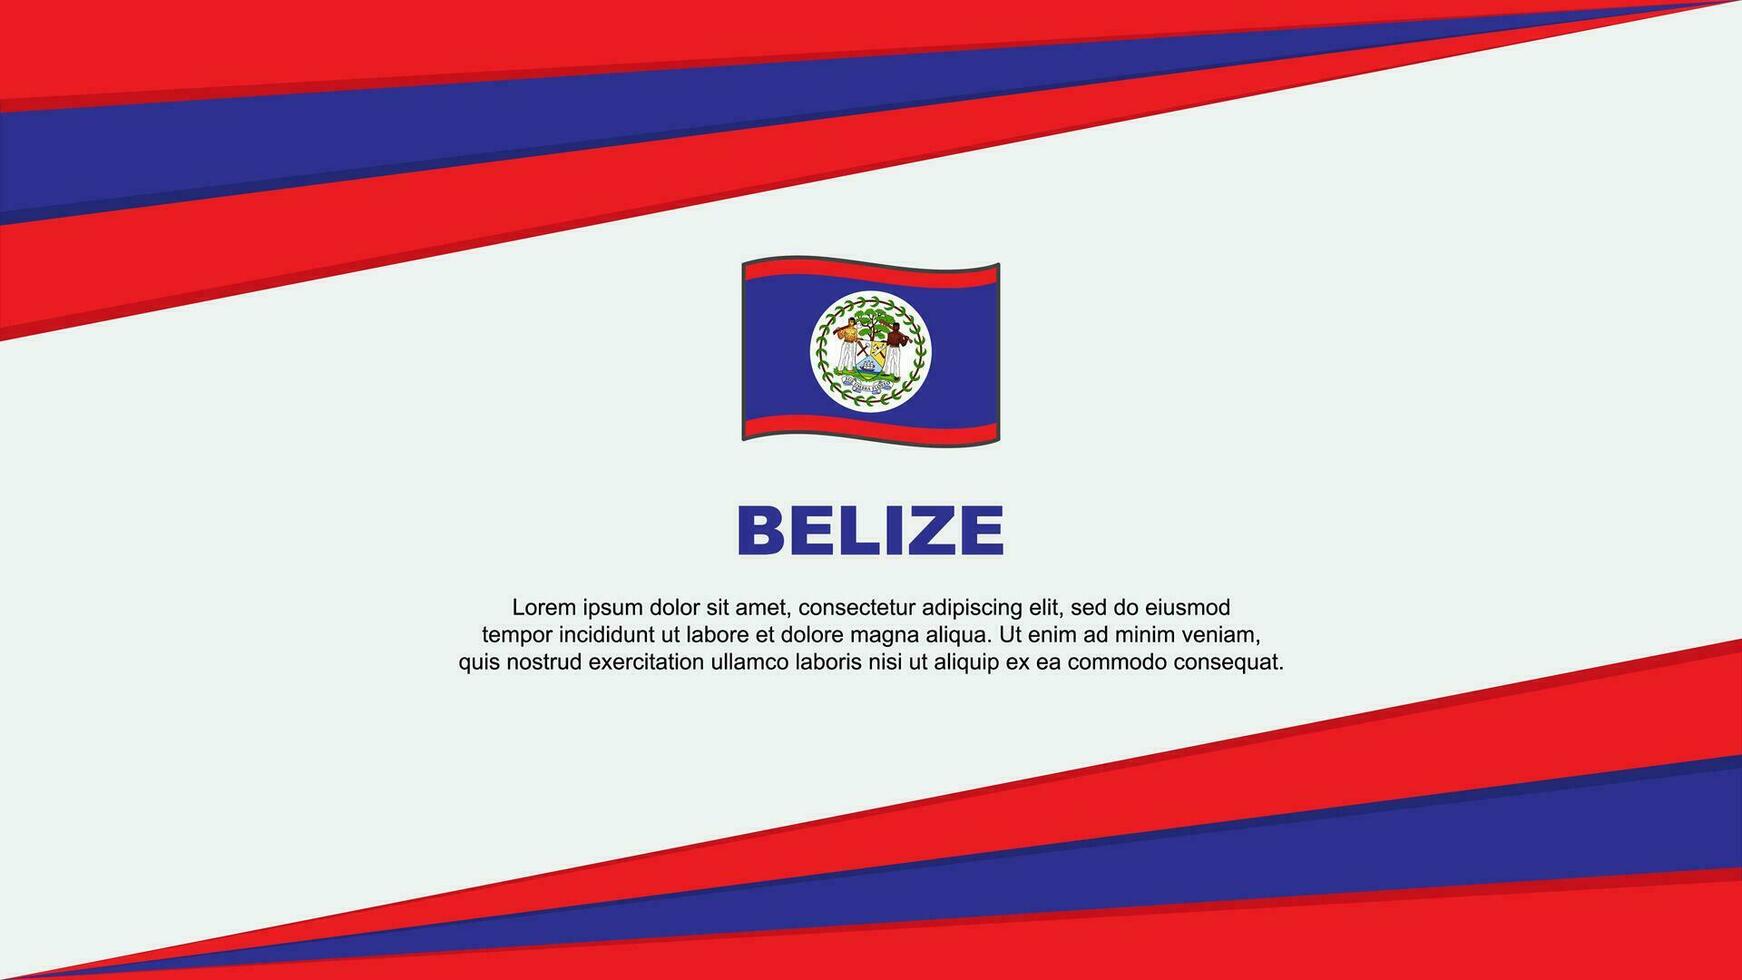 Belize Flag Abstract Background Design Template. Belize Independence Day Banner Cartoon Vector Illustration. Belize Design